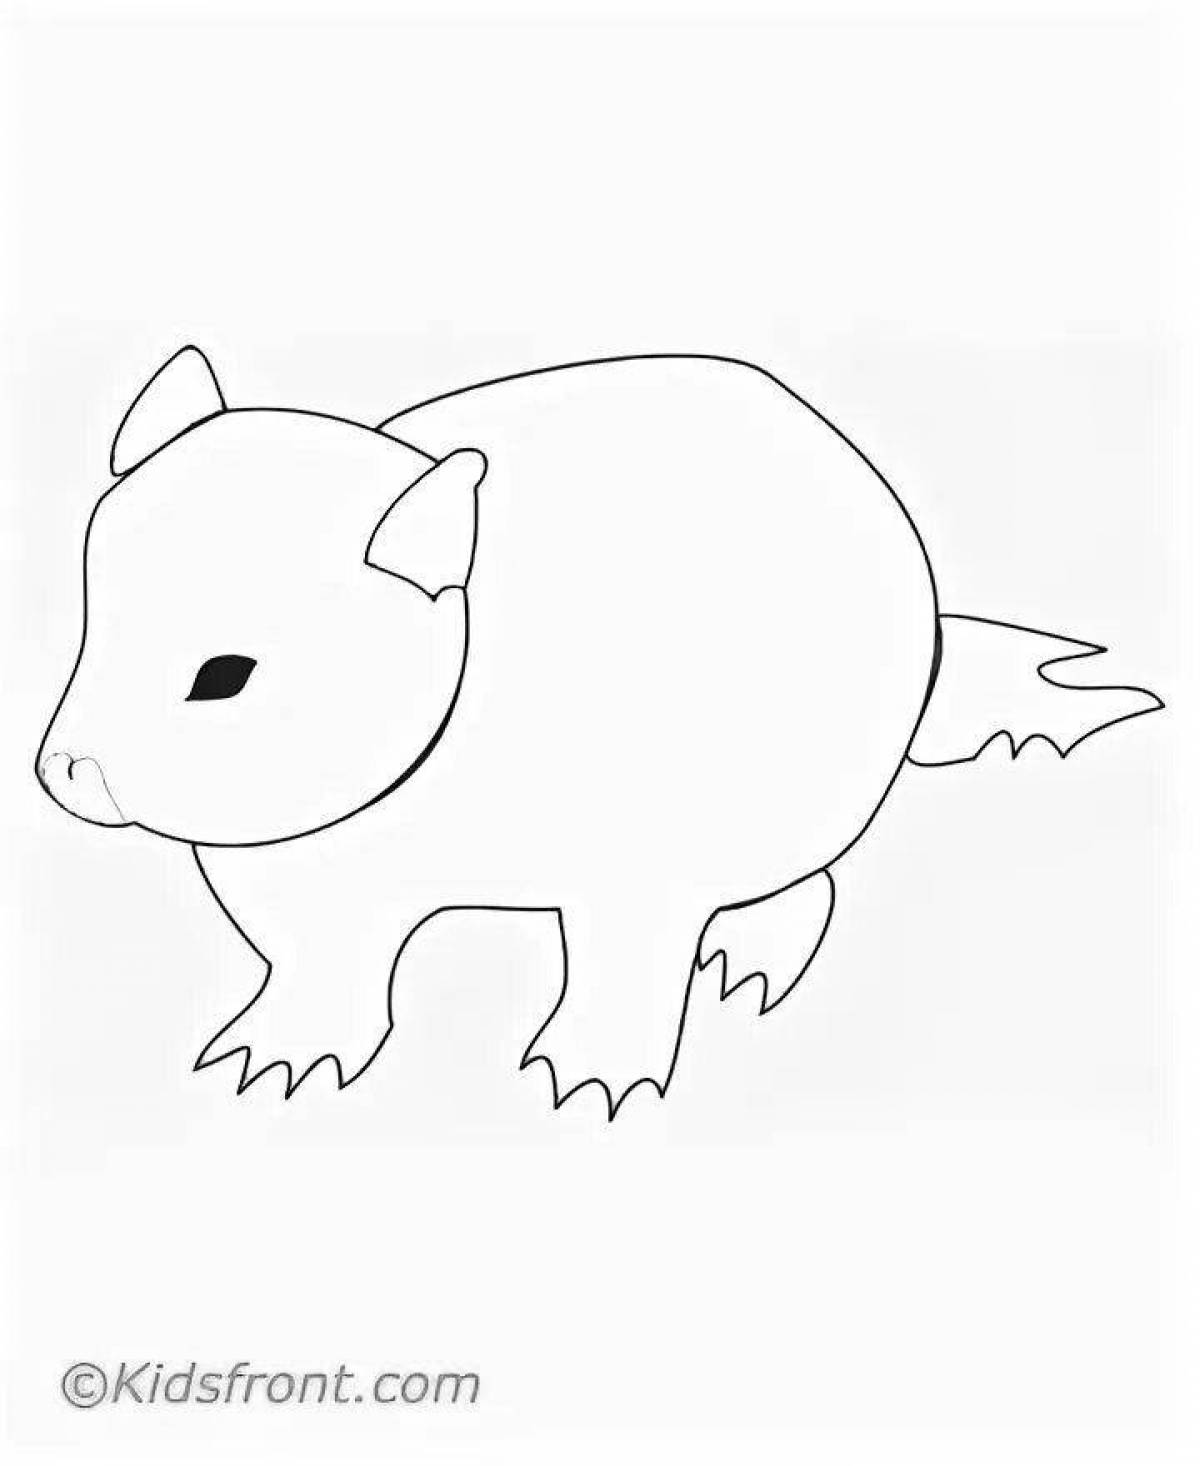 Fun wombat coloring book